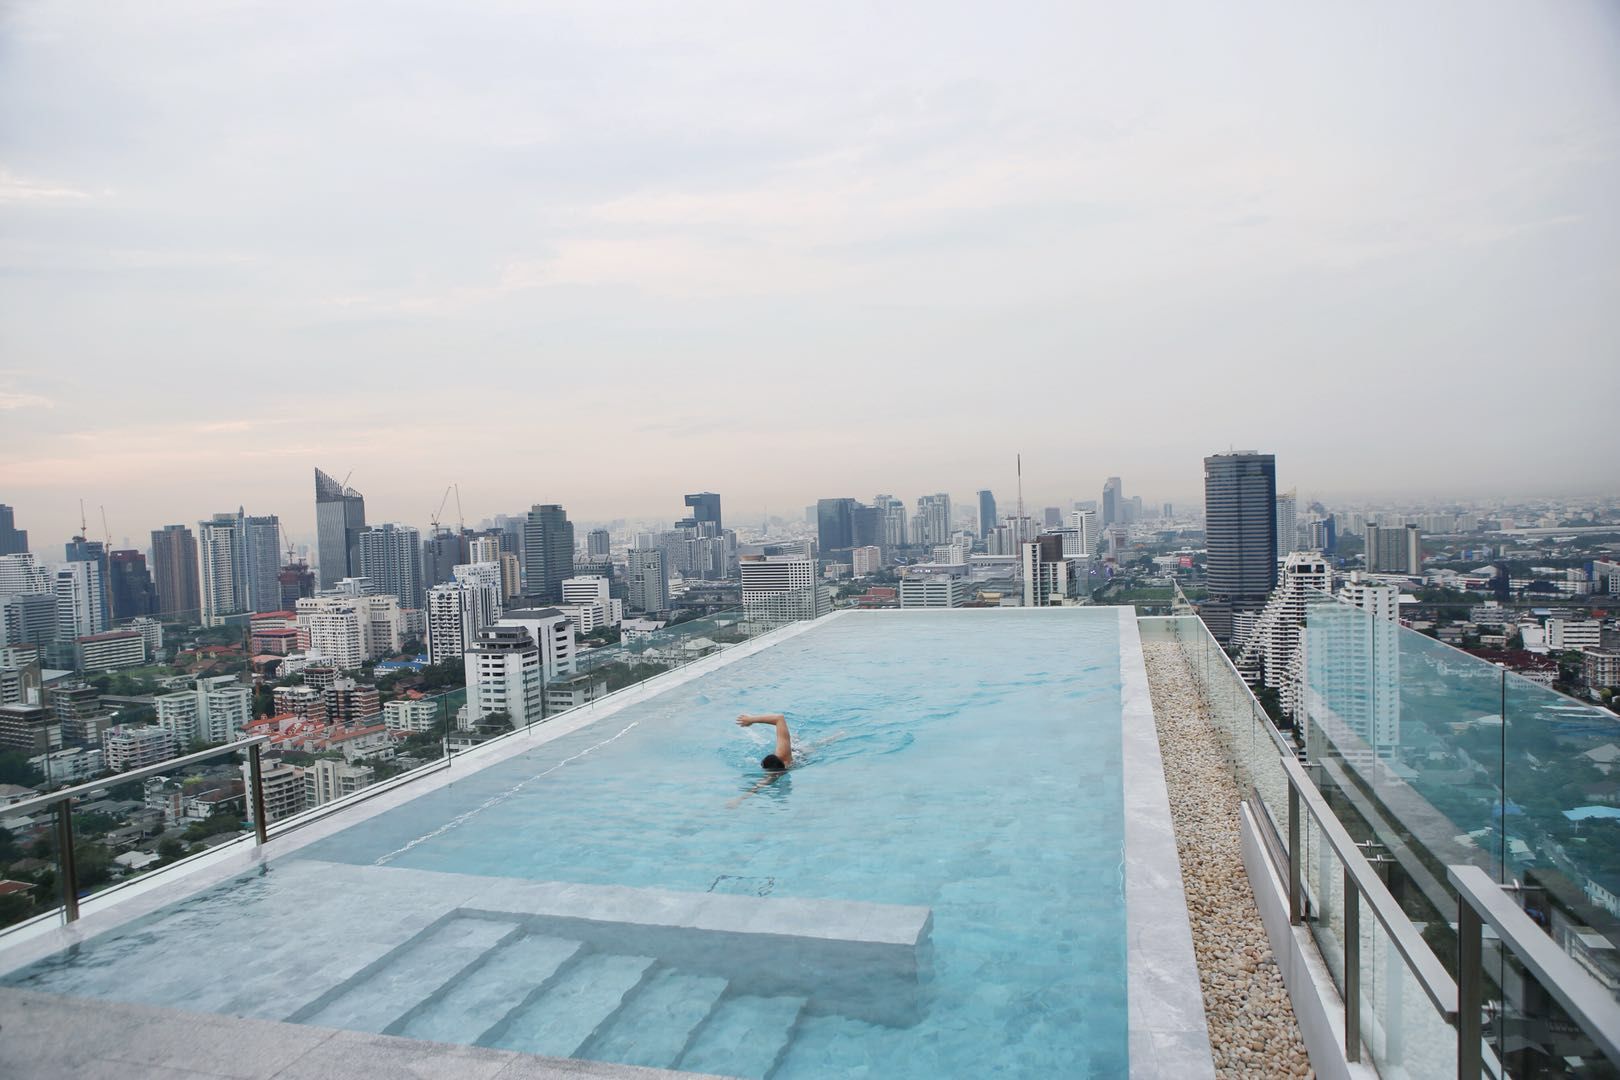 泰国曼谷著名的网红酒店什么样?34楼高空无边